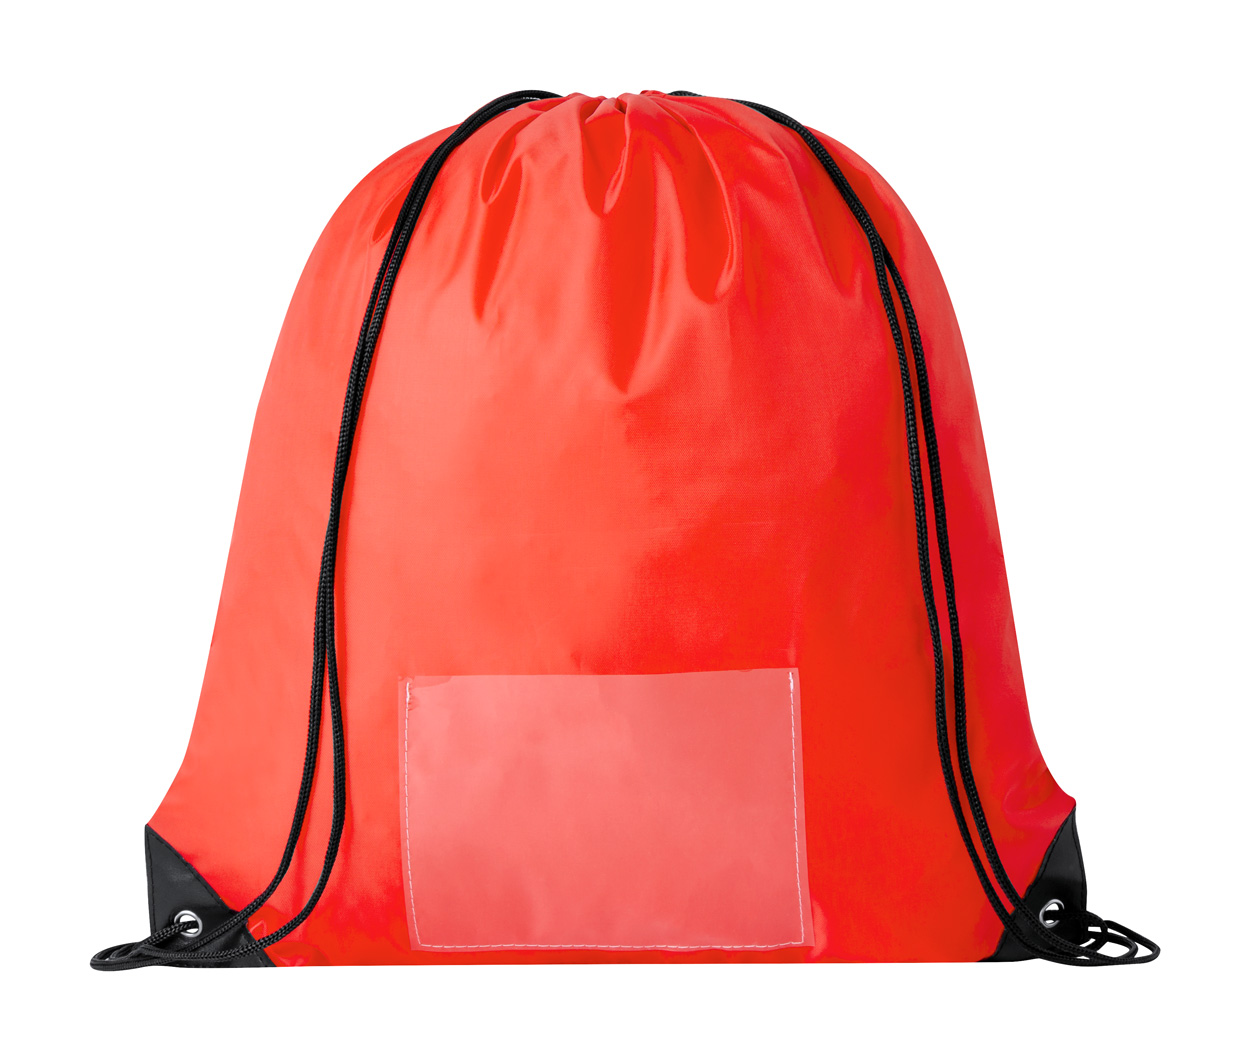 Selasi bag for download - red